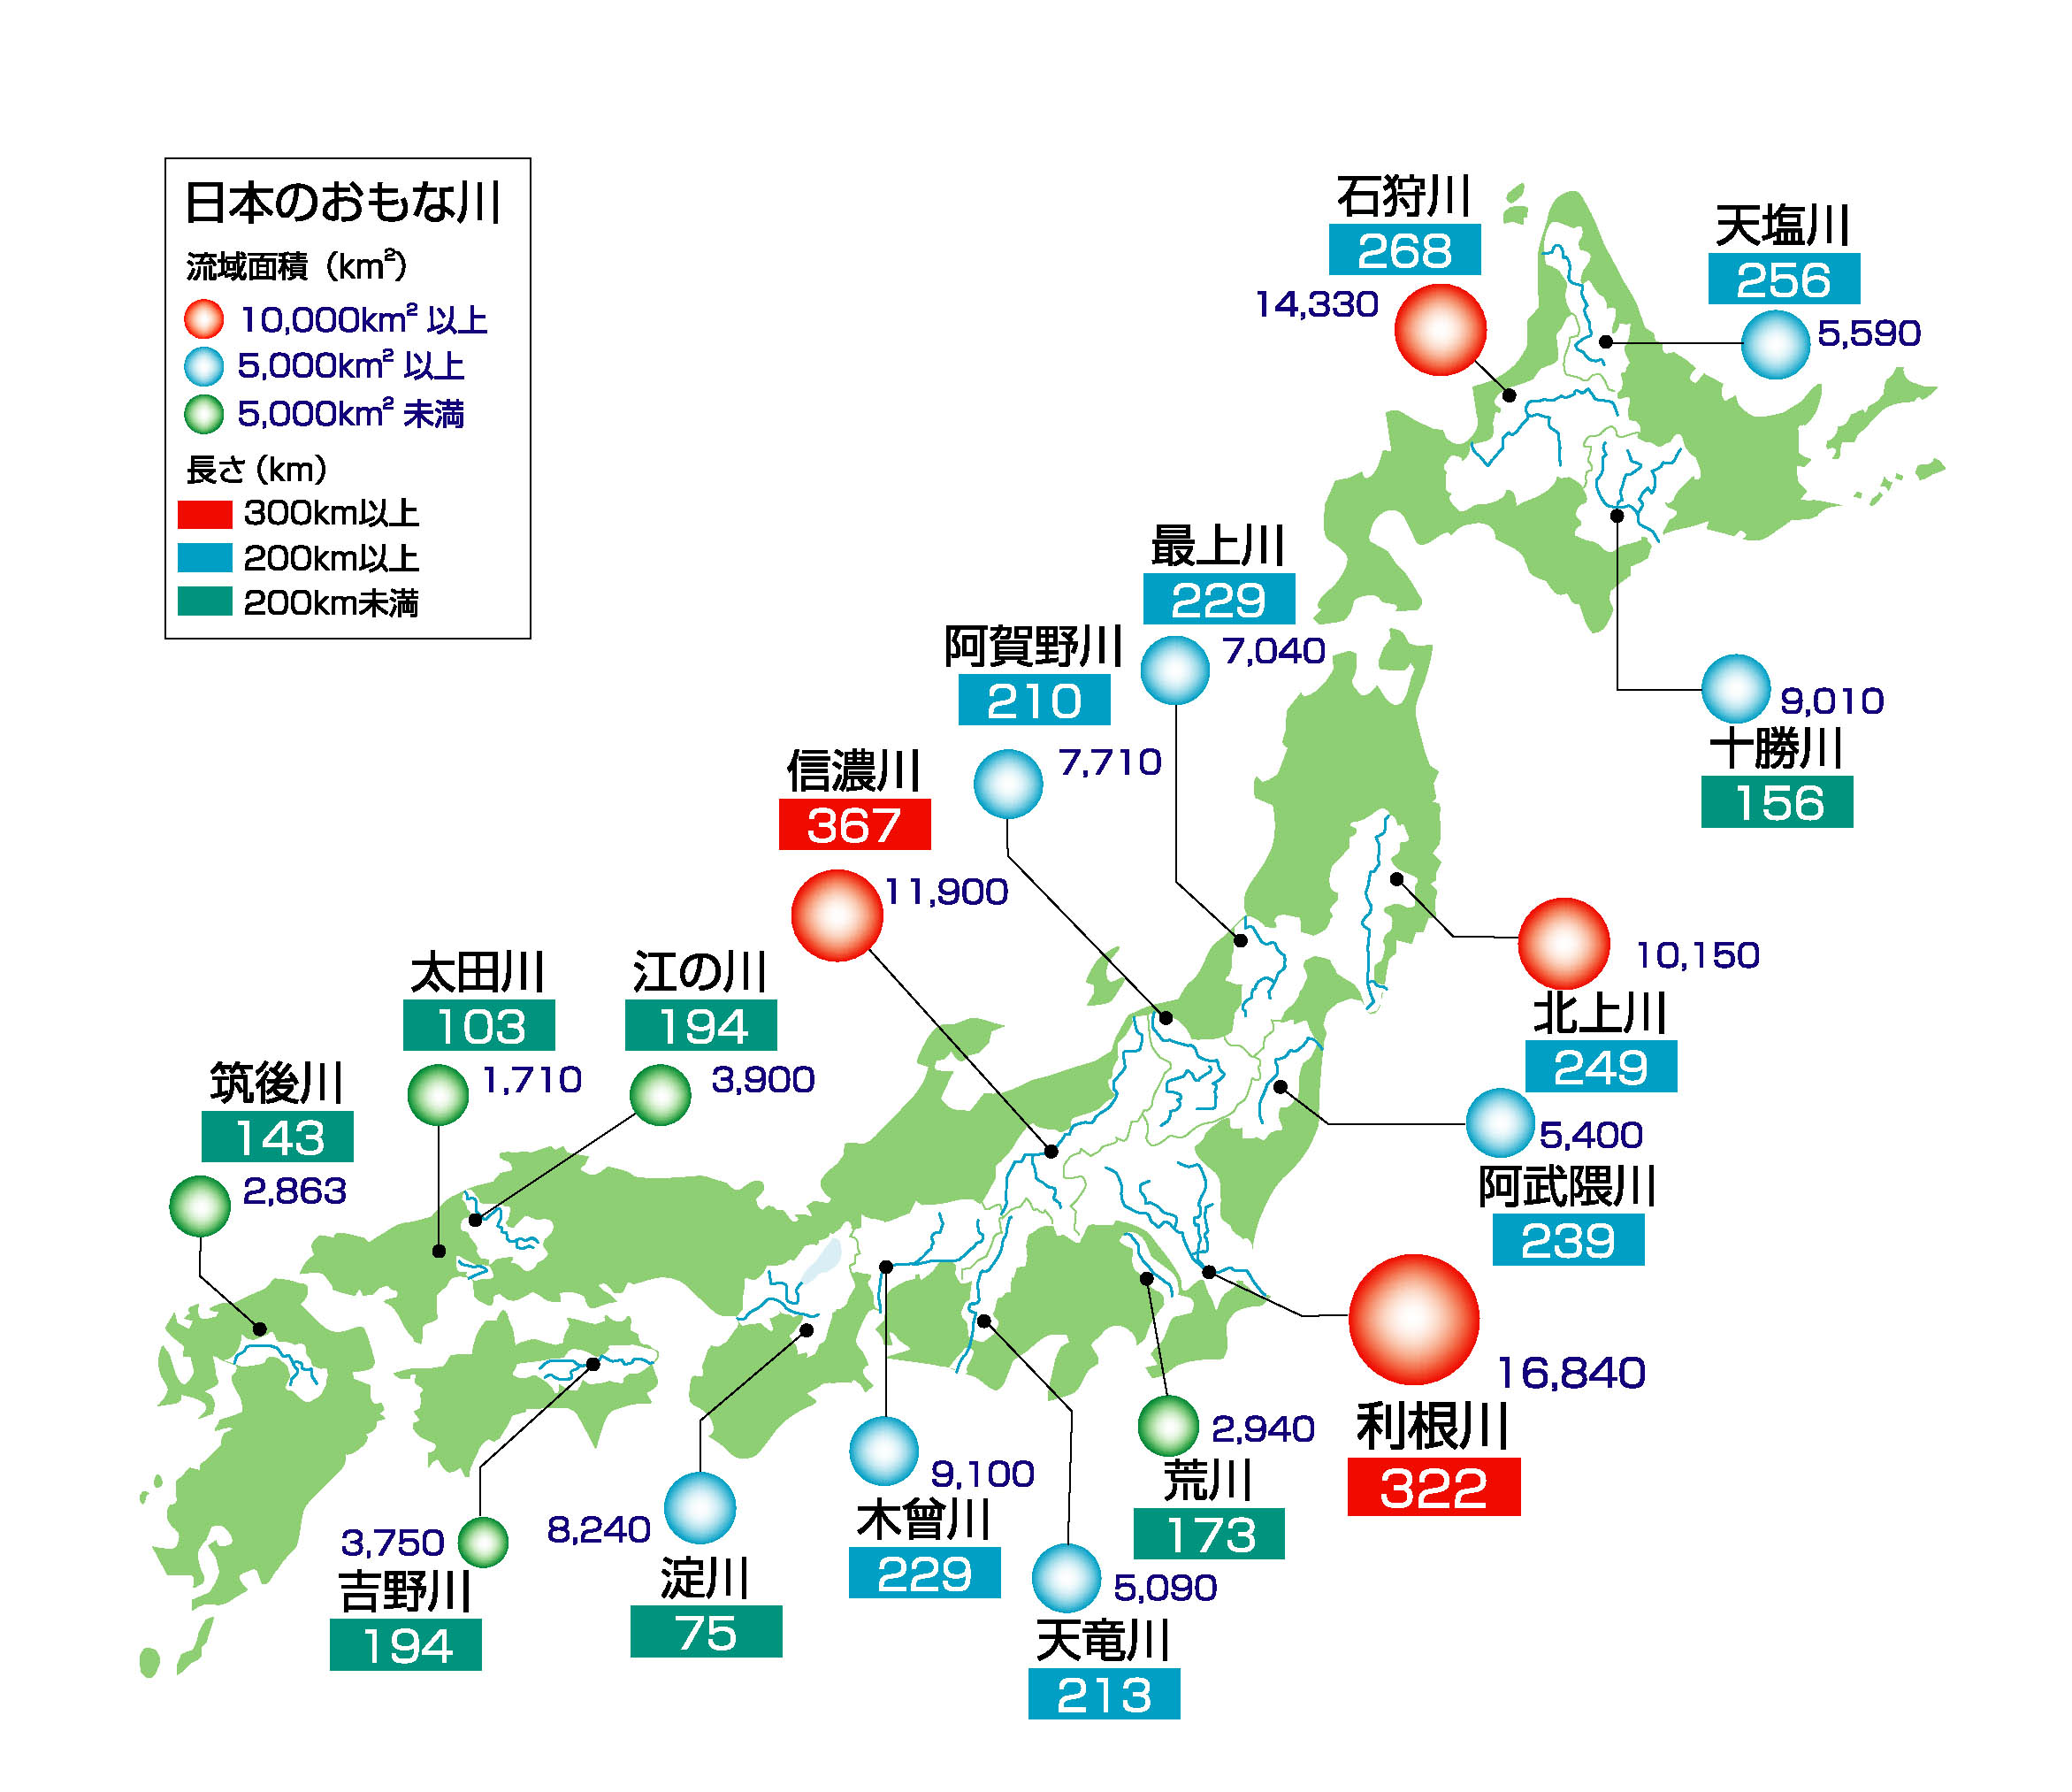 日本で「2番目」に高い山・長い川・大きい湖・大きい県・人口が多い都道府県はどこ?―中学受験地理